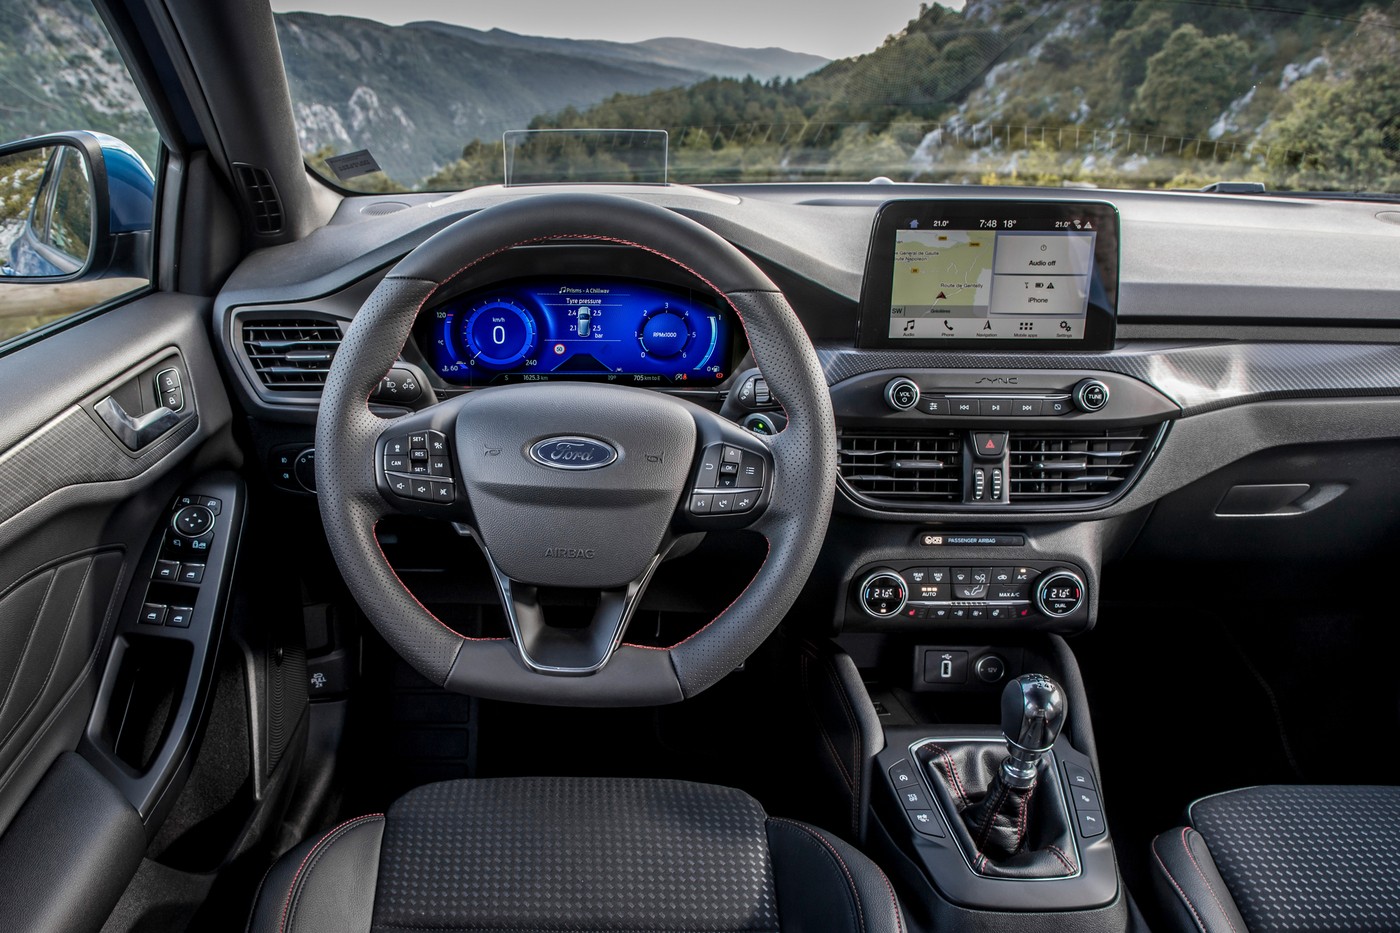 Обновки для Ford Focus: литровый мотор на 155 л.с. и цифровые приборы